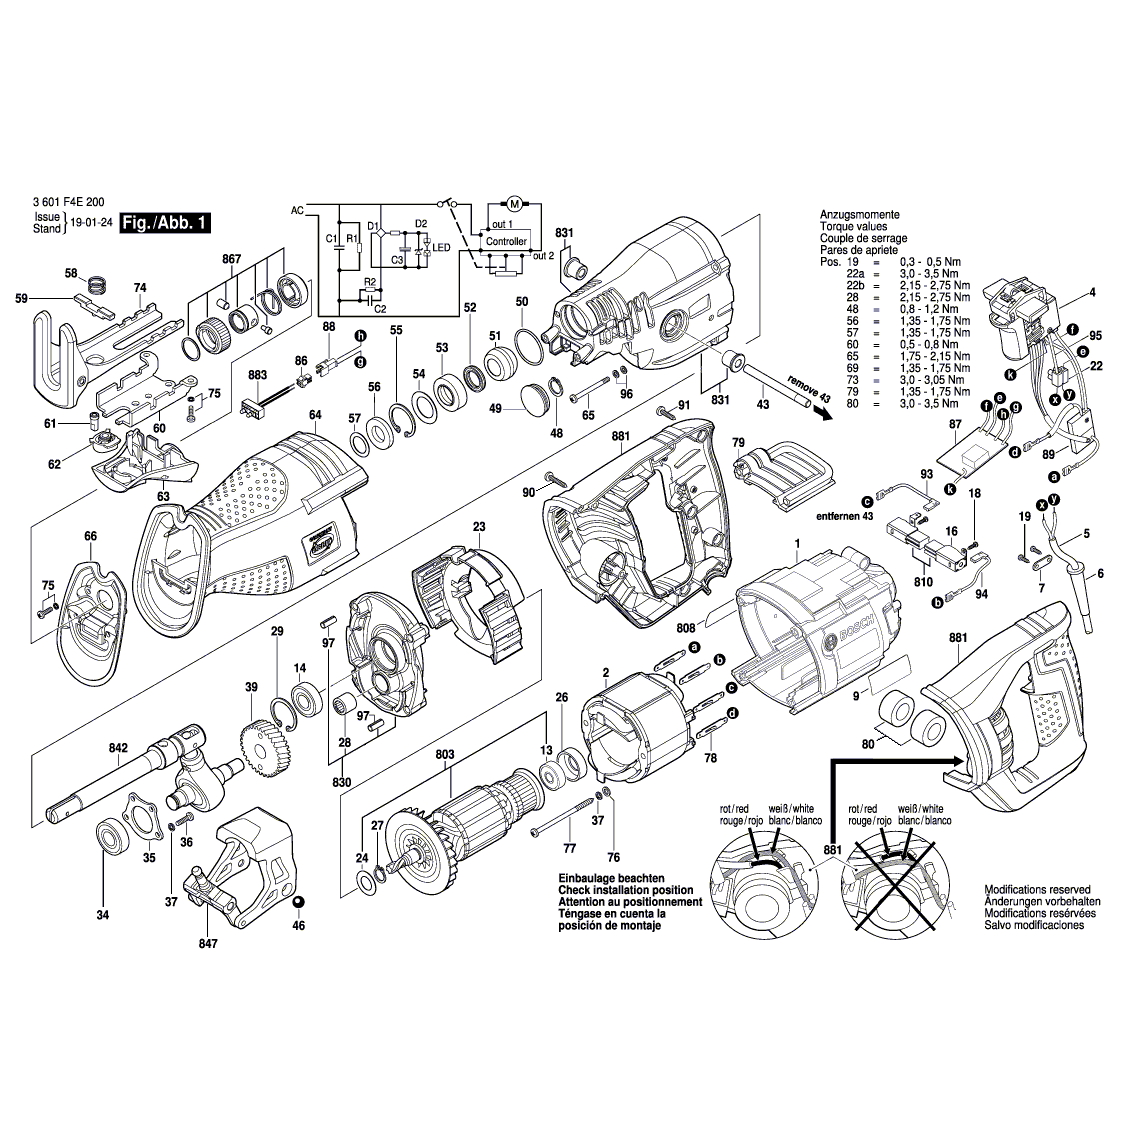 Схема на Пила Bosch GSA 1300 PCE (3601F4E200)